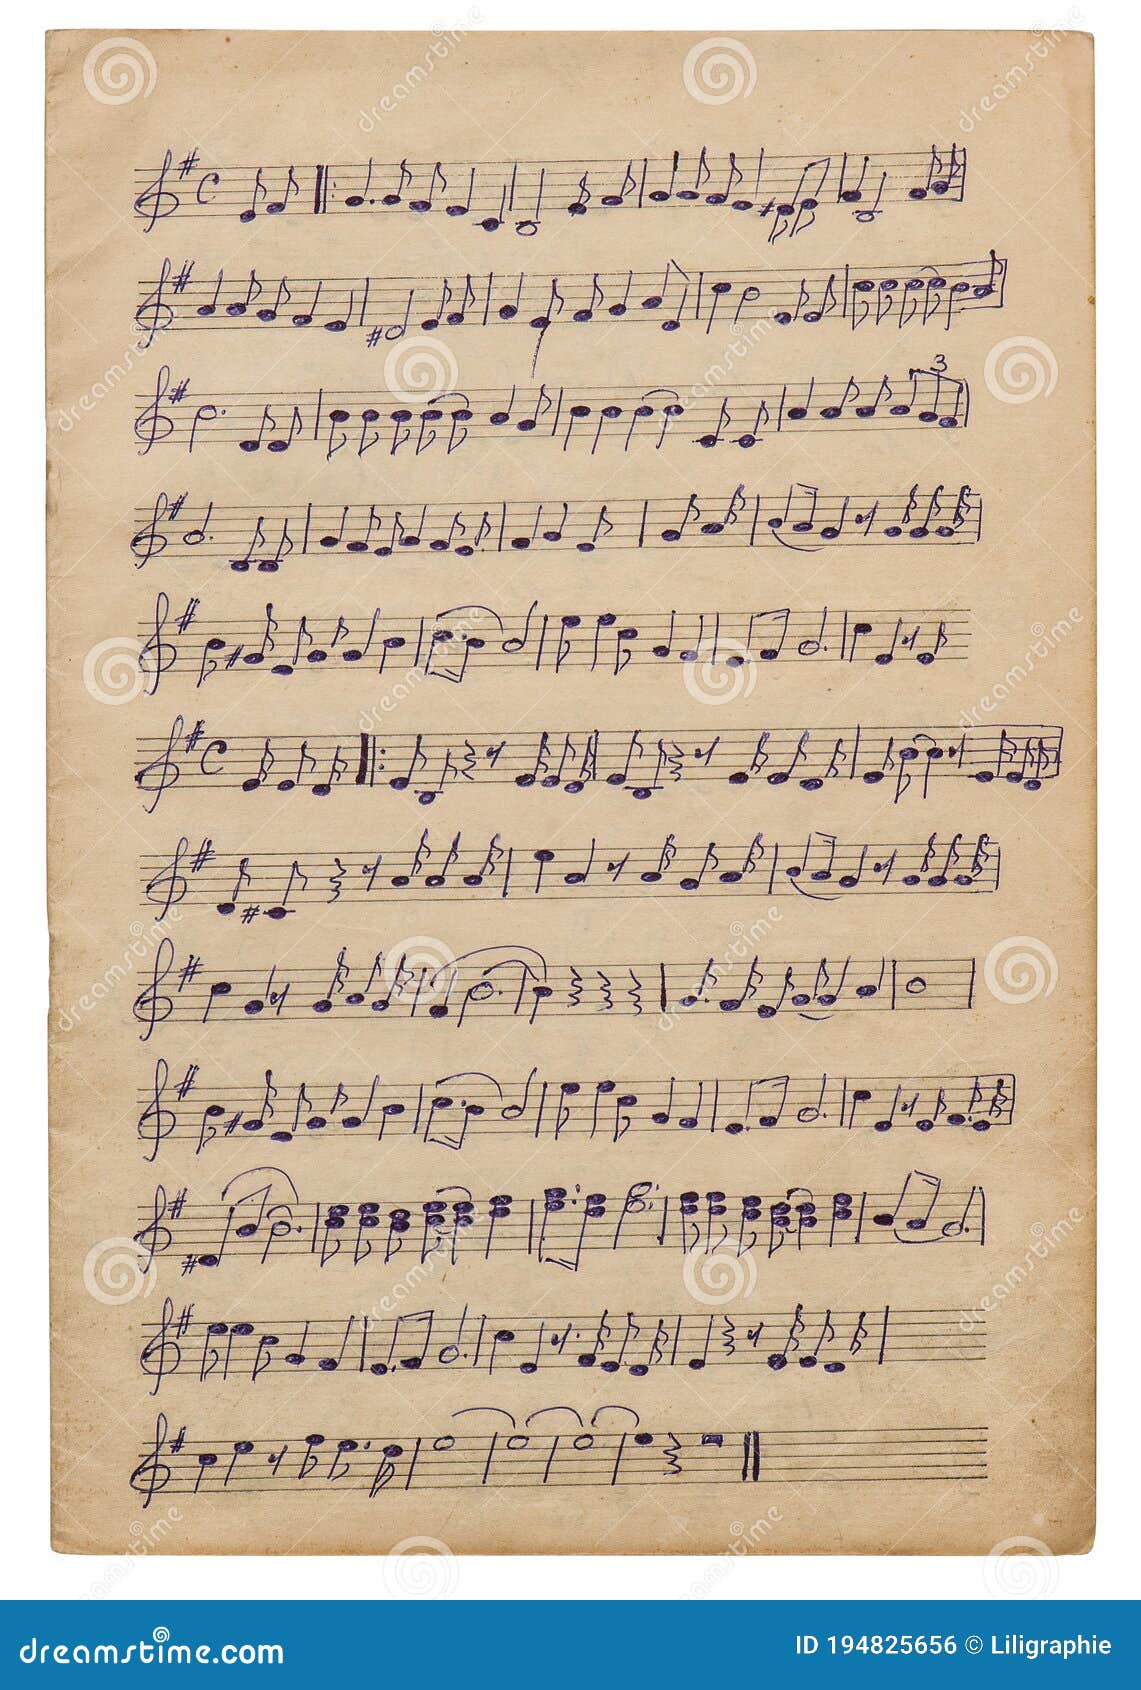 paper sheet handwritten musical notes background scrapbook decoupage overlay